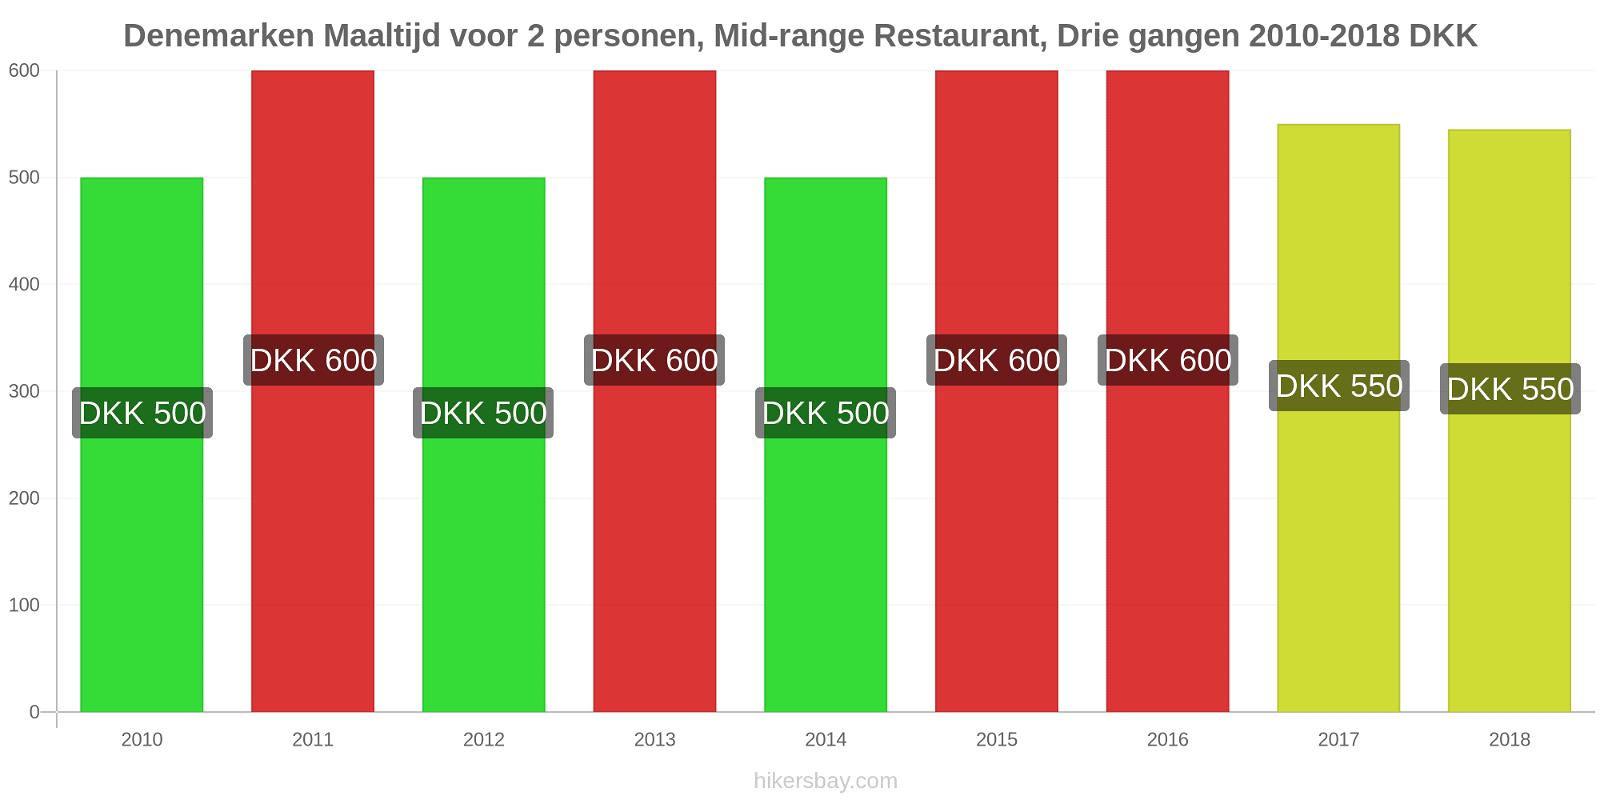 Denemarken prijswijzigingen Maaltijd voor 2 personen, Restaurant in het middensegment, Driegangenrestaurant hikersbay.com